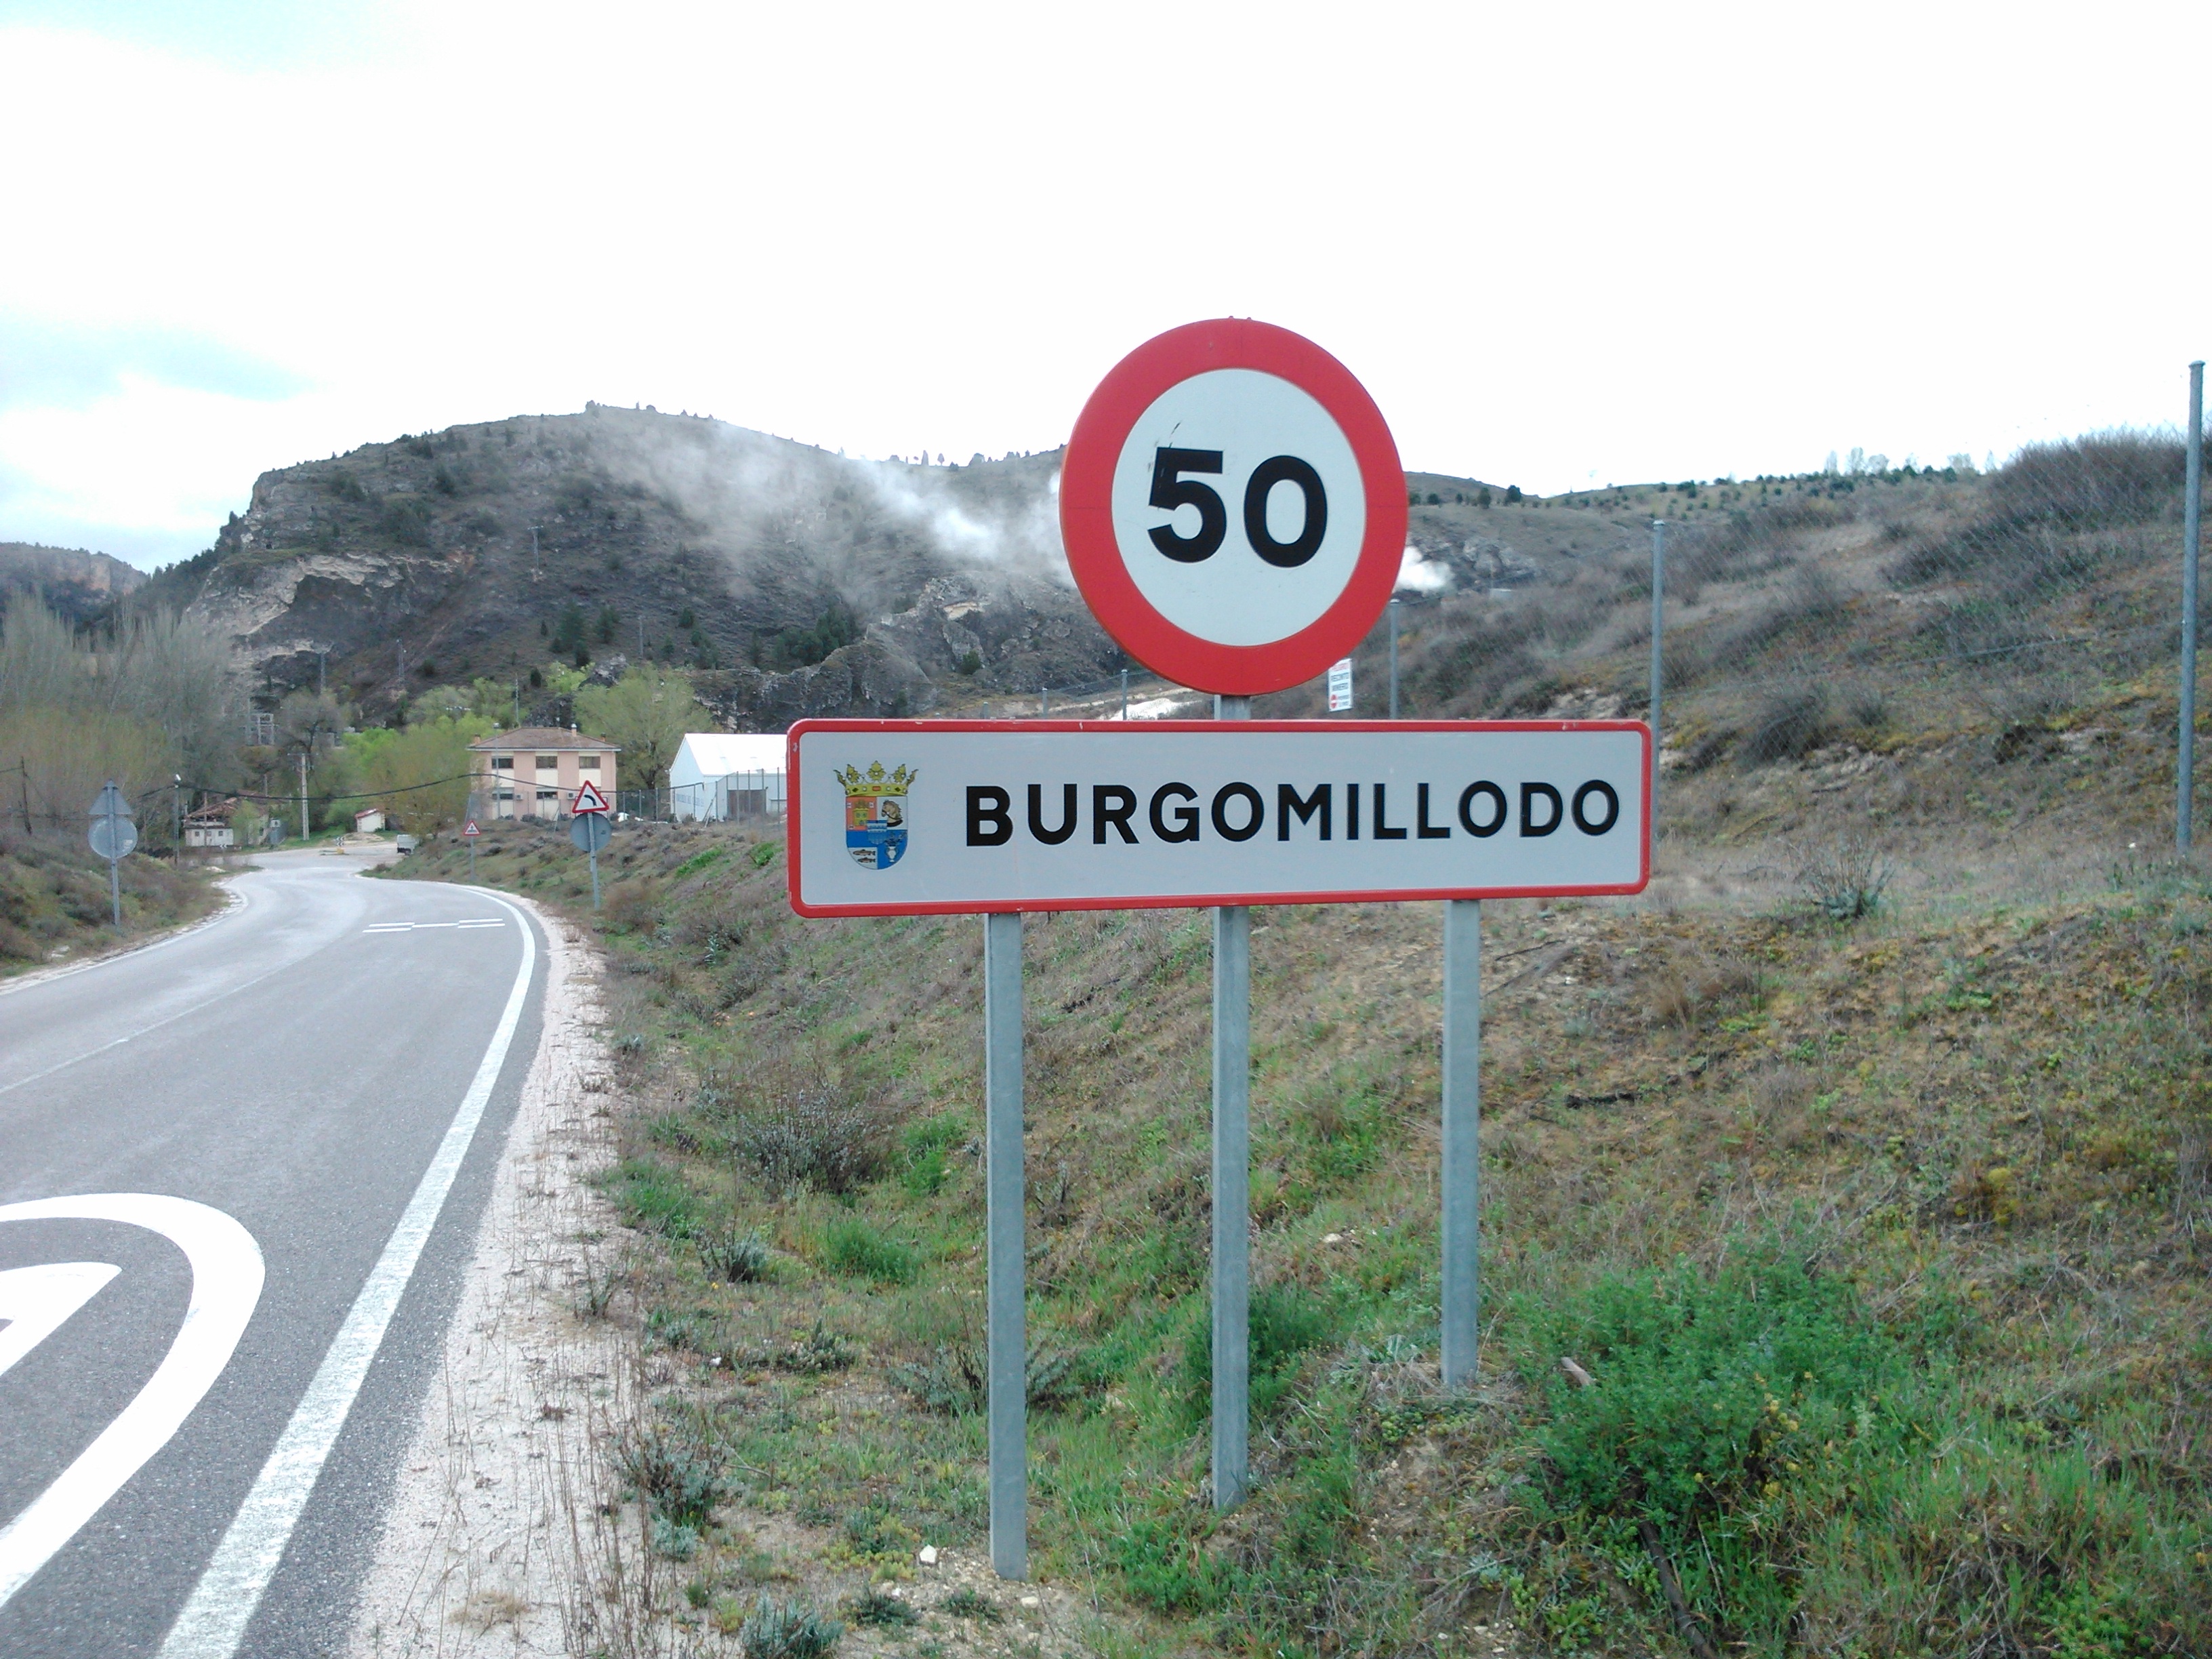 Foto de Burgomillodo (Segovia), España